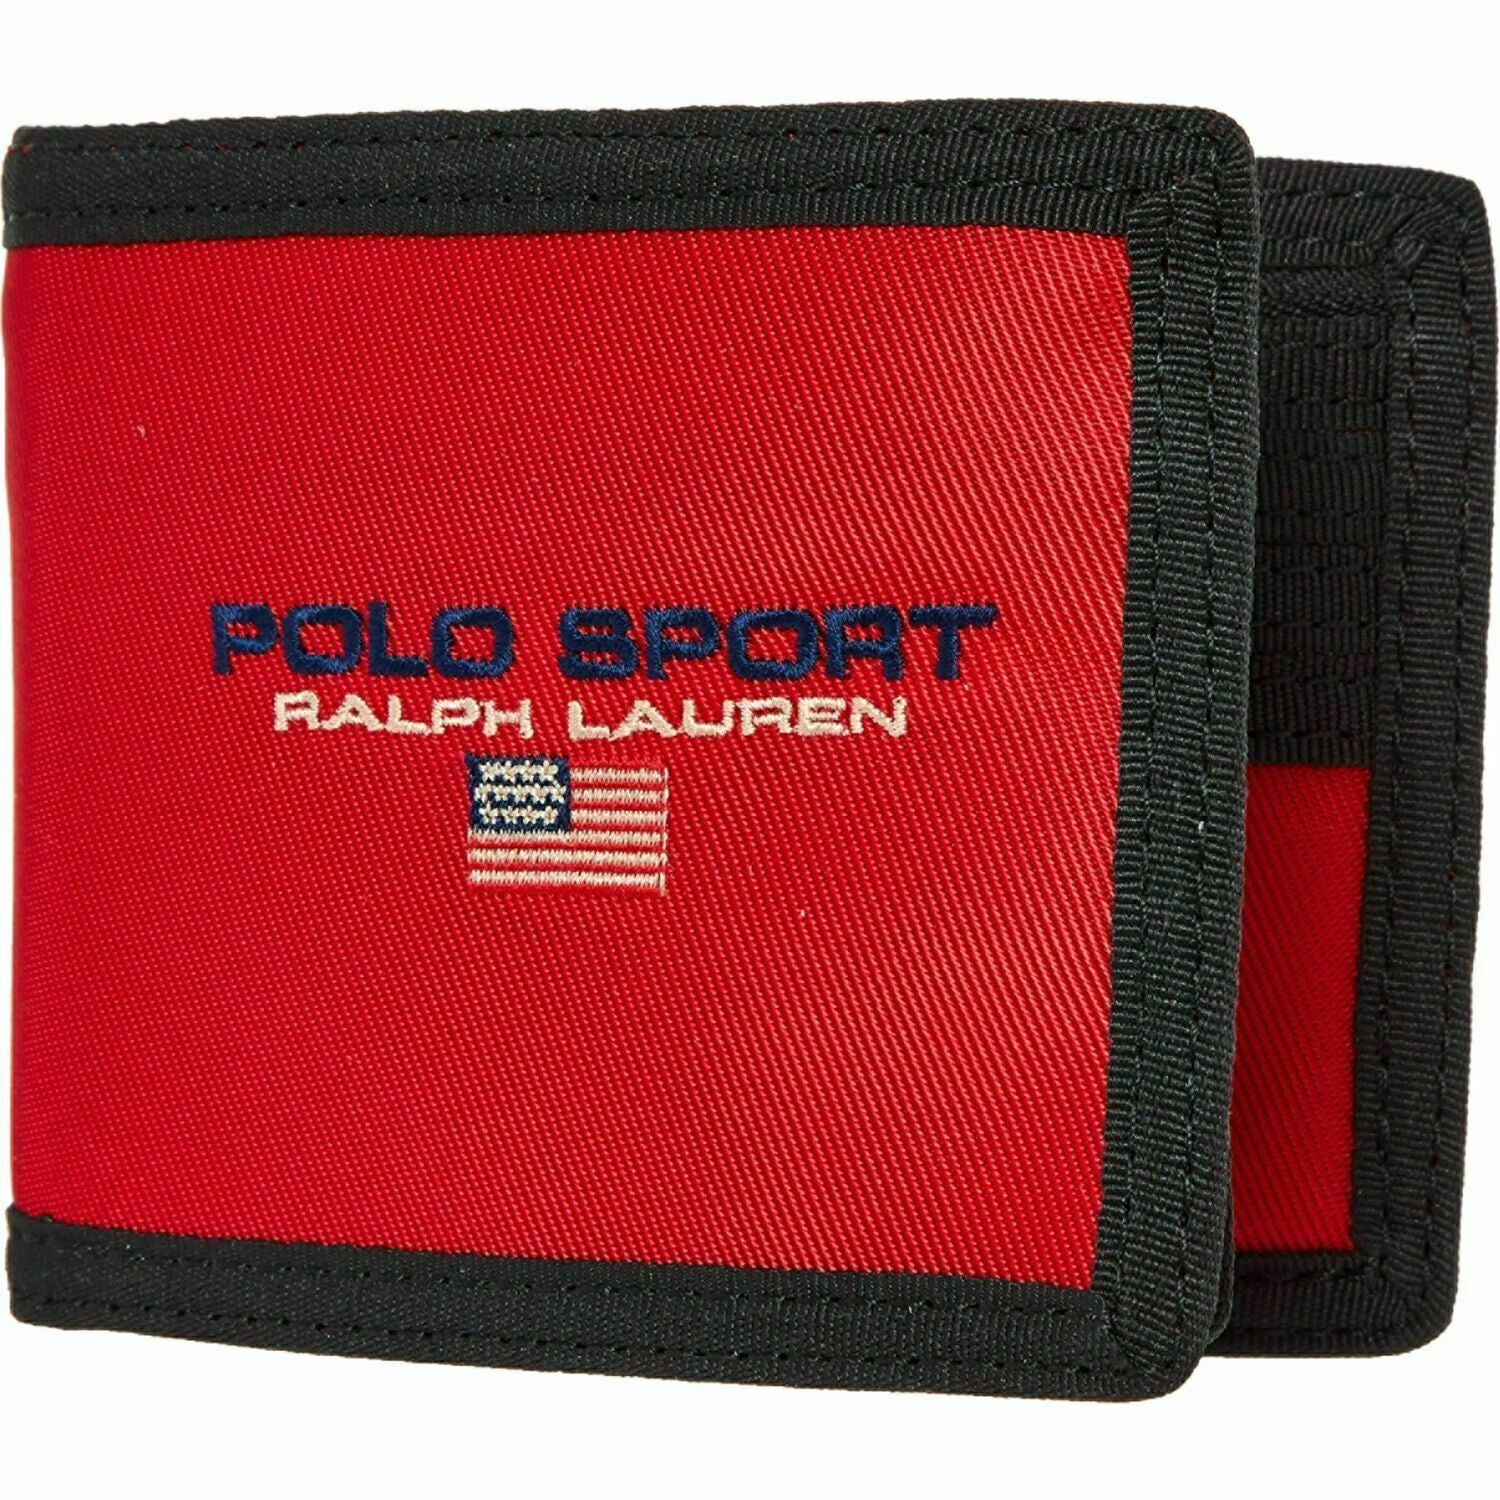 POLO RALPH LAUREN Men's Sport Red/Back Logo Flag Nylon Bifold Wallet